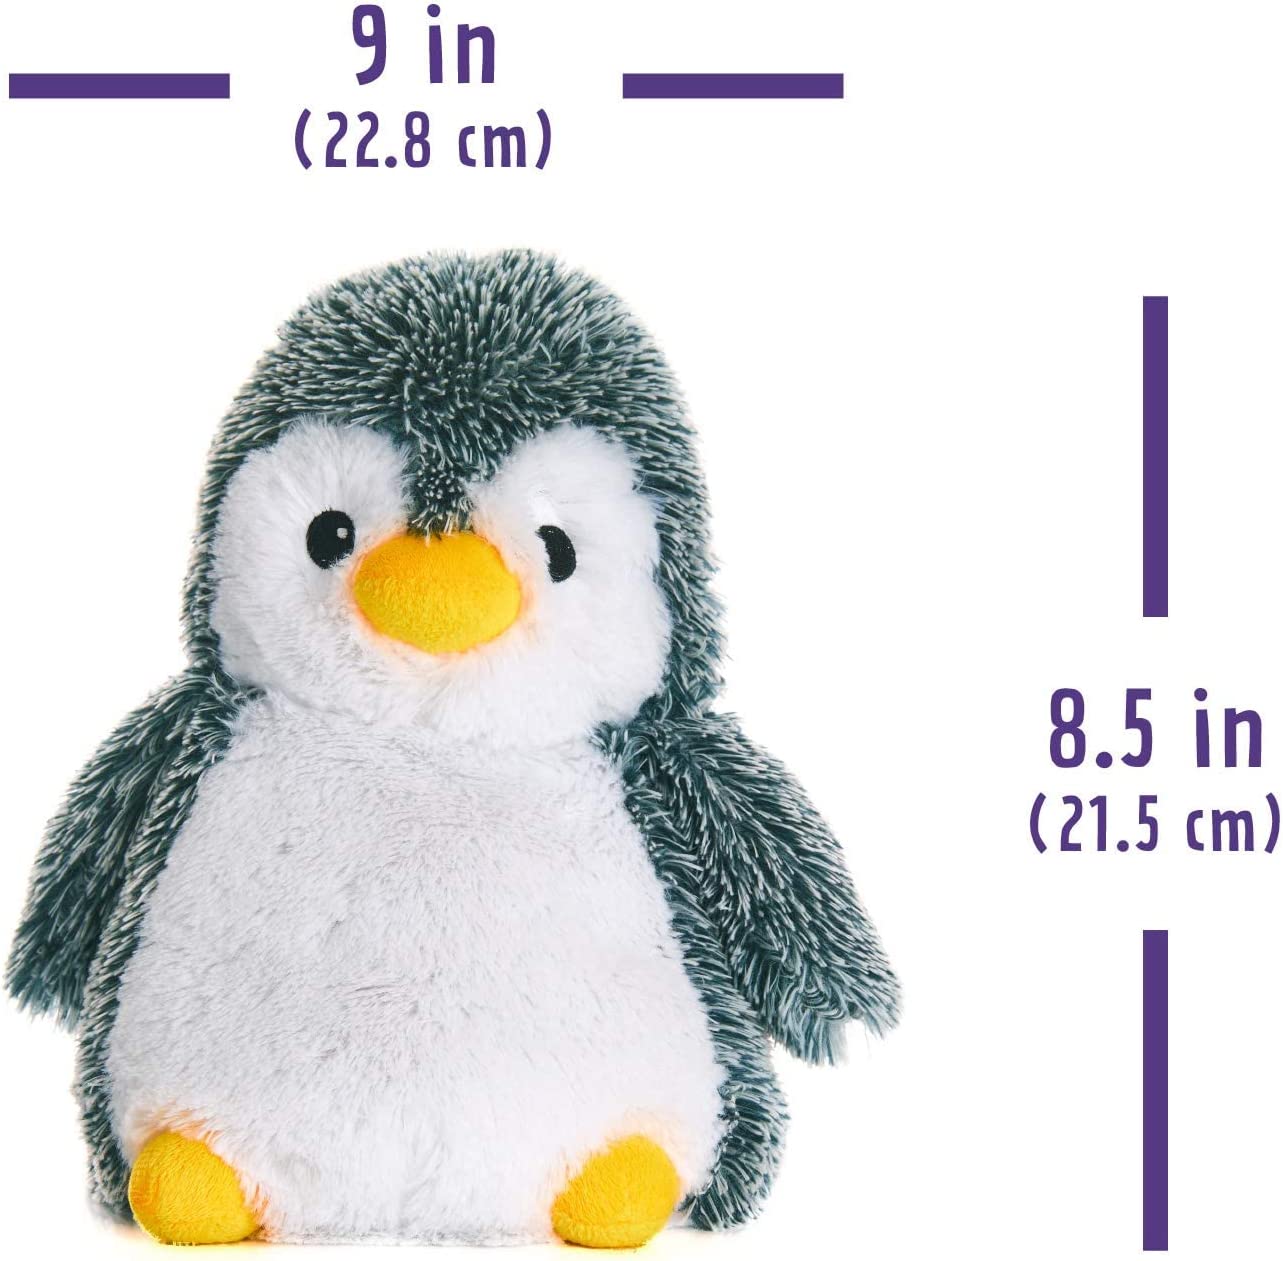 warm pals penguin dimensions